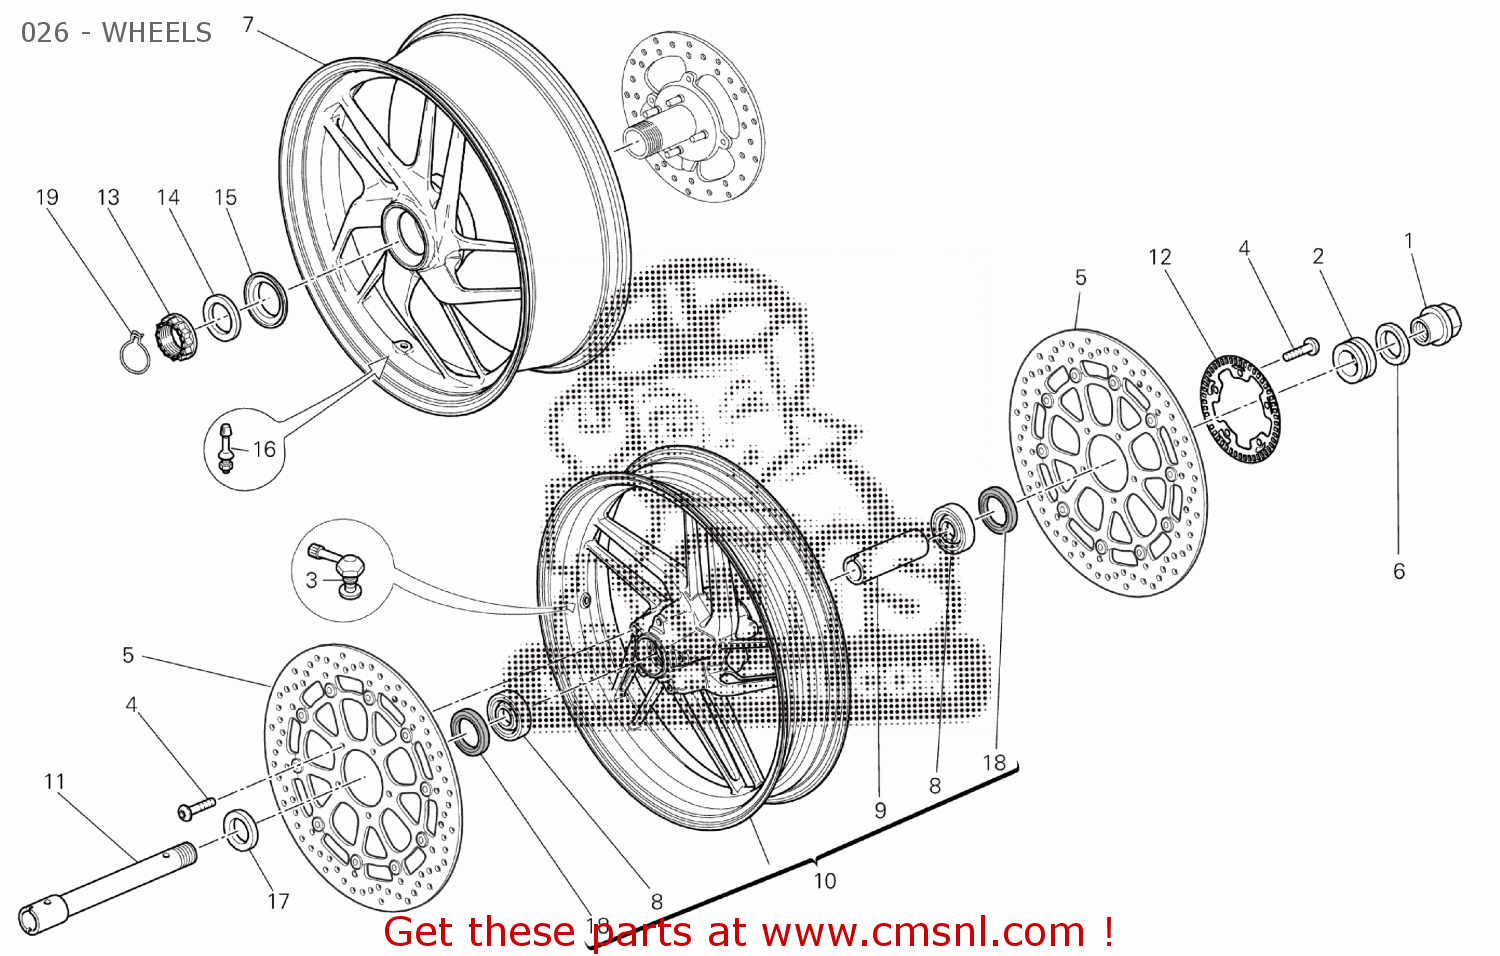 50121631AT: Front Wheel Rim Ducati - buy the 50121631AT at CMSNL